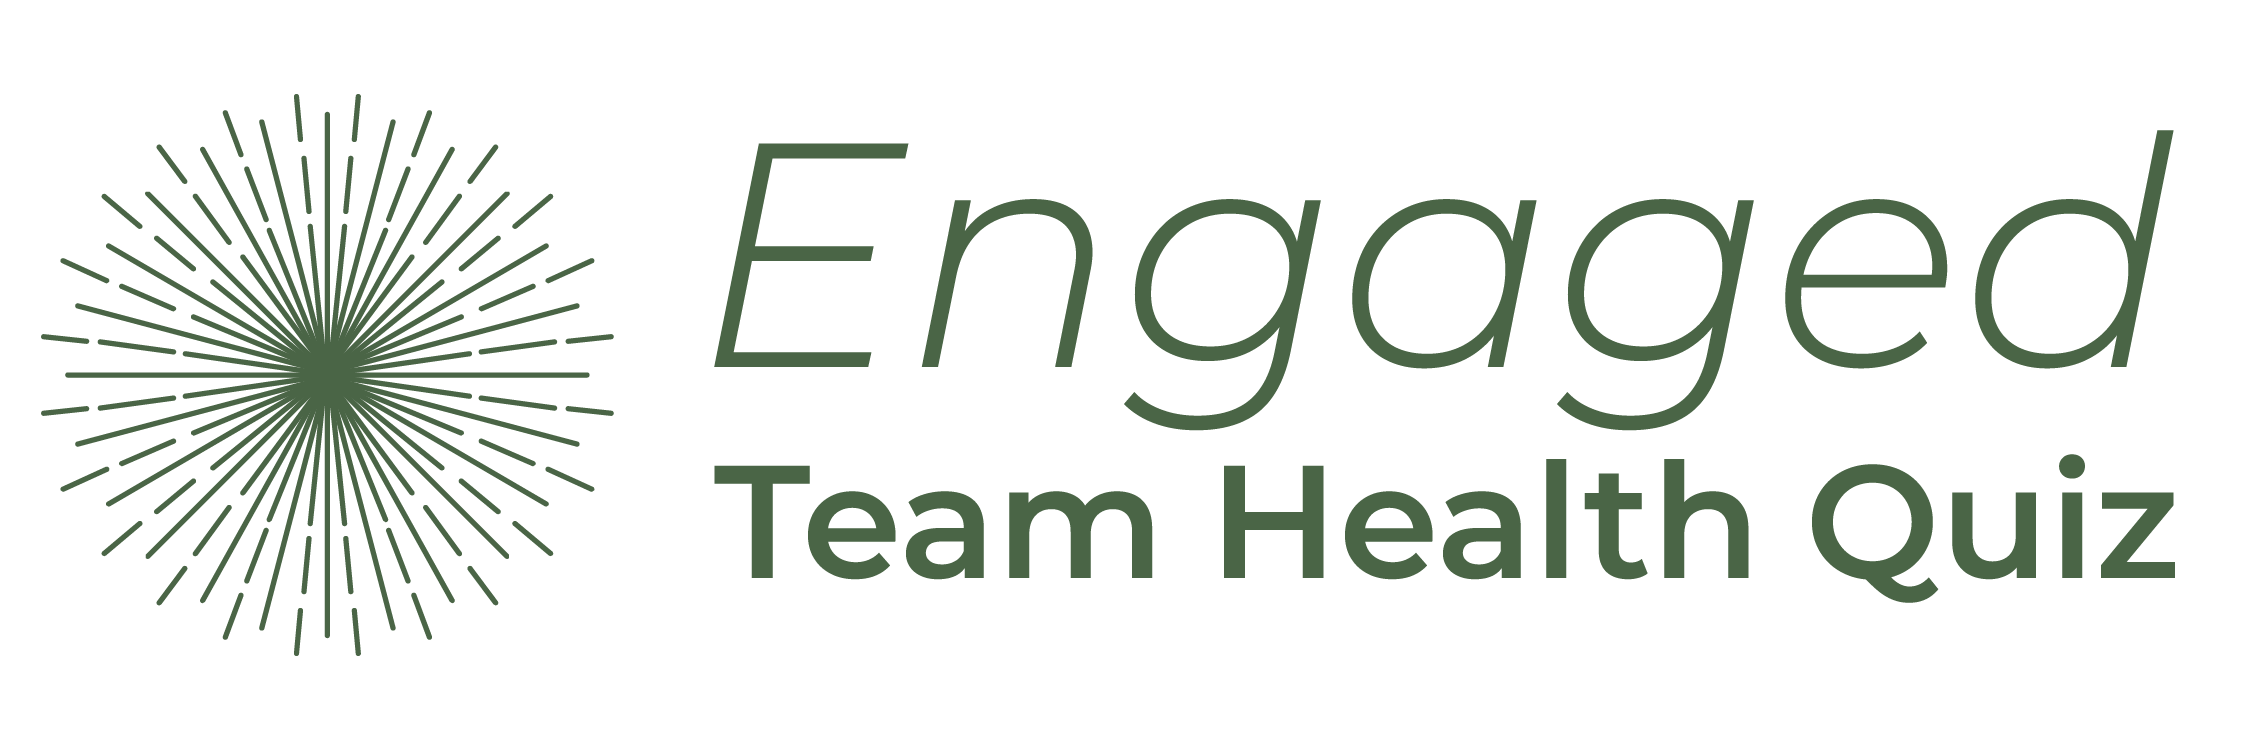 Engaged Team Health